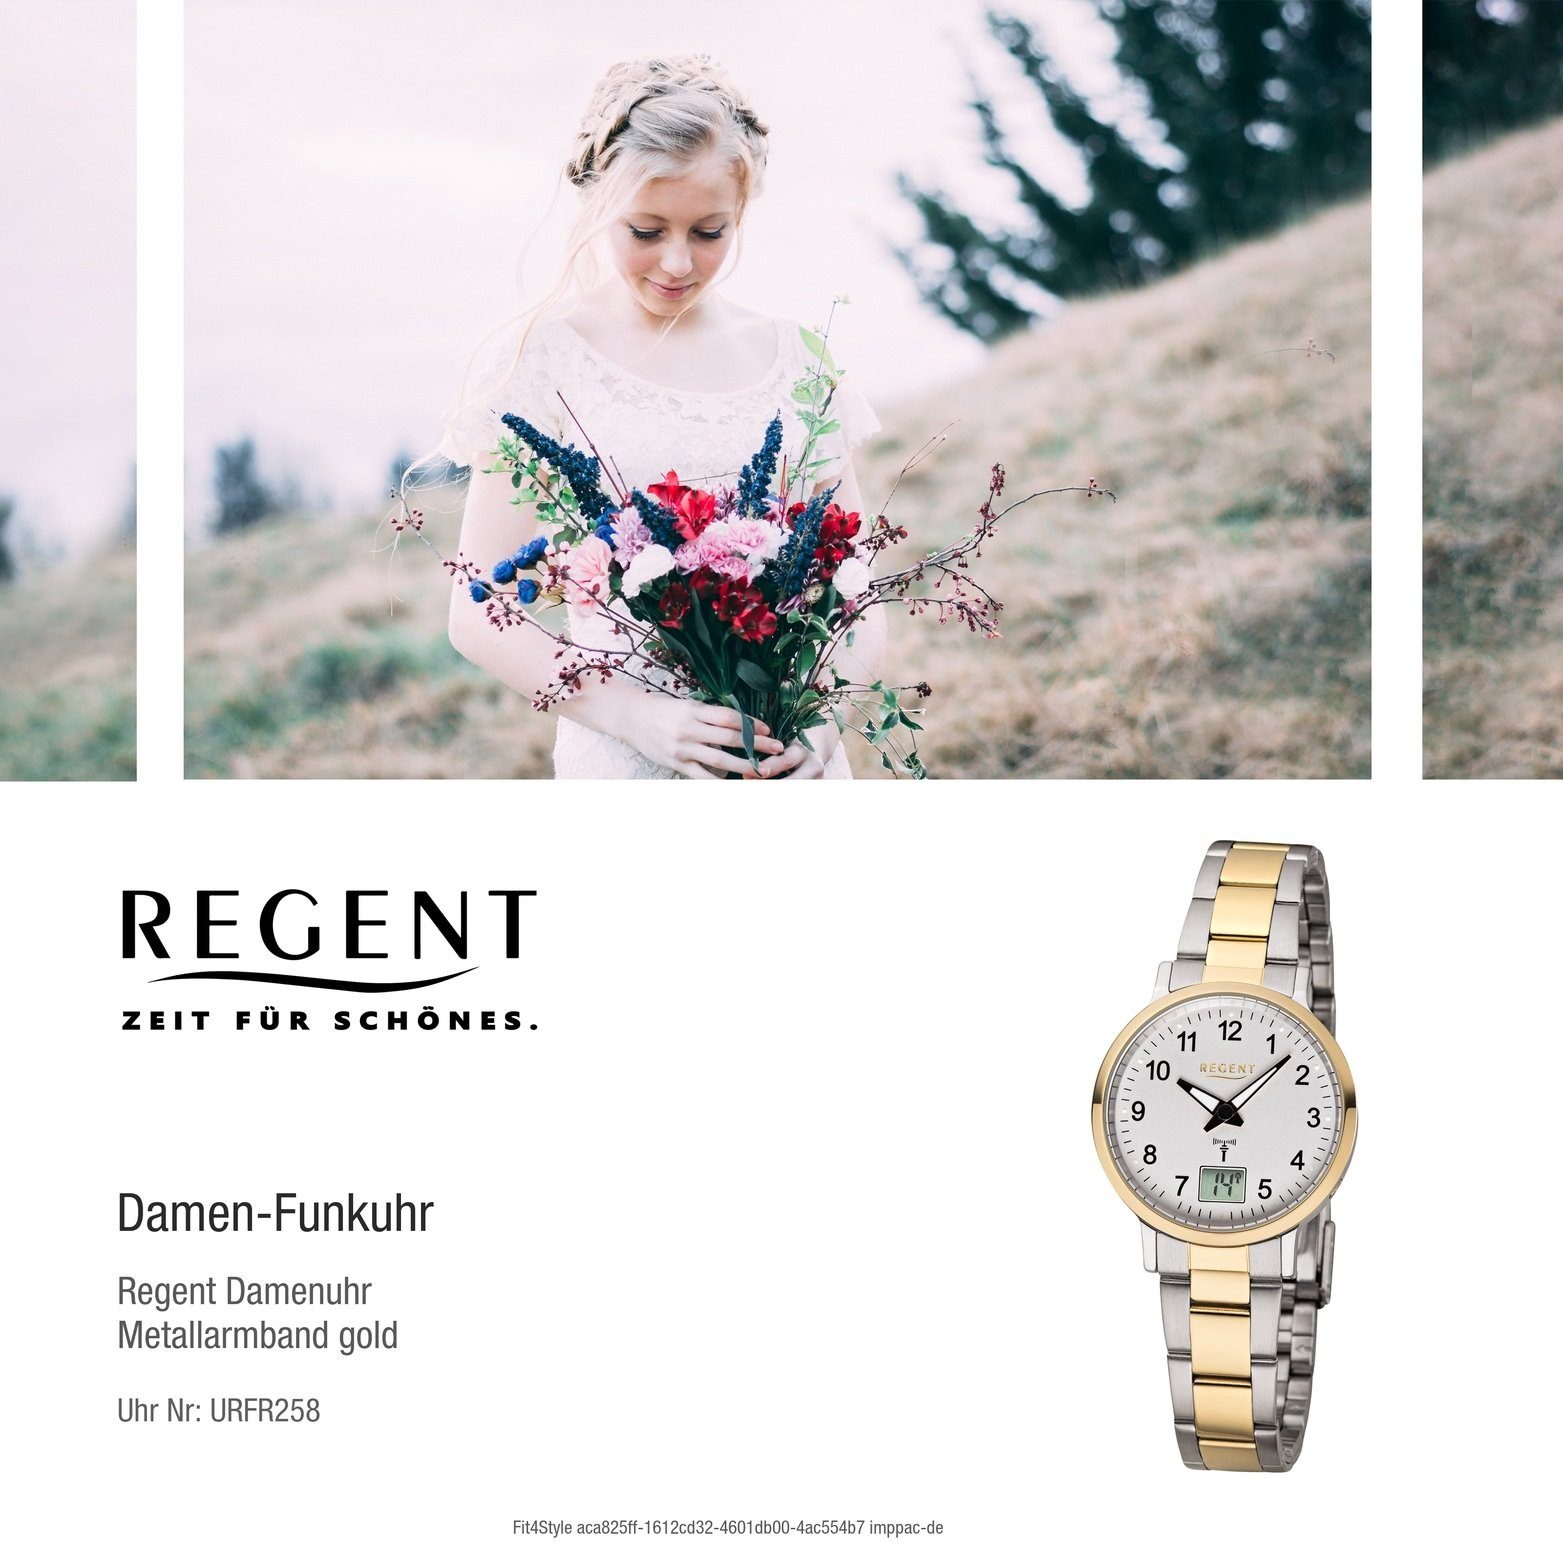 Gehäuse rundes Metall Damen Regent Elegant-Style Uhr (ca. FR-258, 30mm), Metallarmband, mit Regent Damenuhr Funkuhr